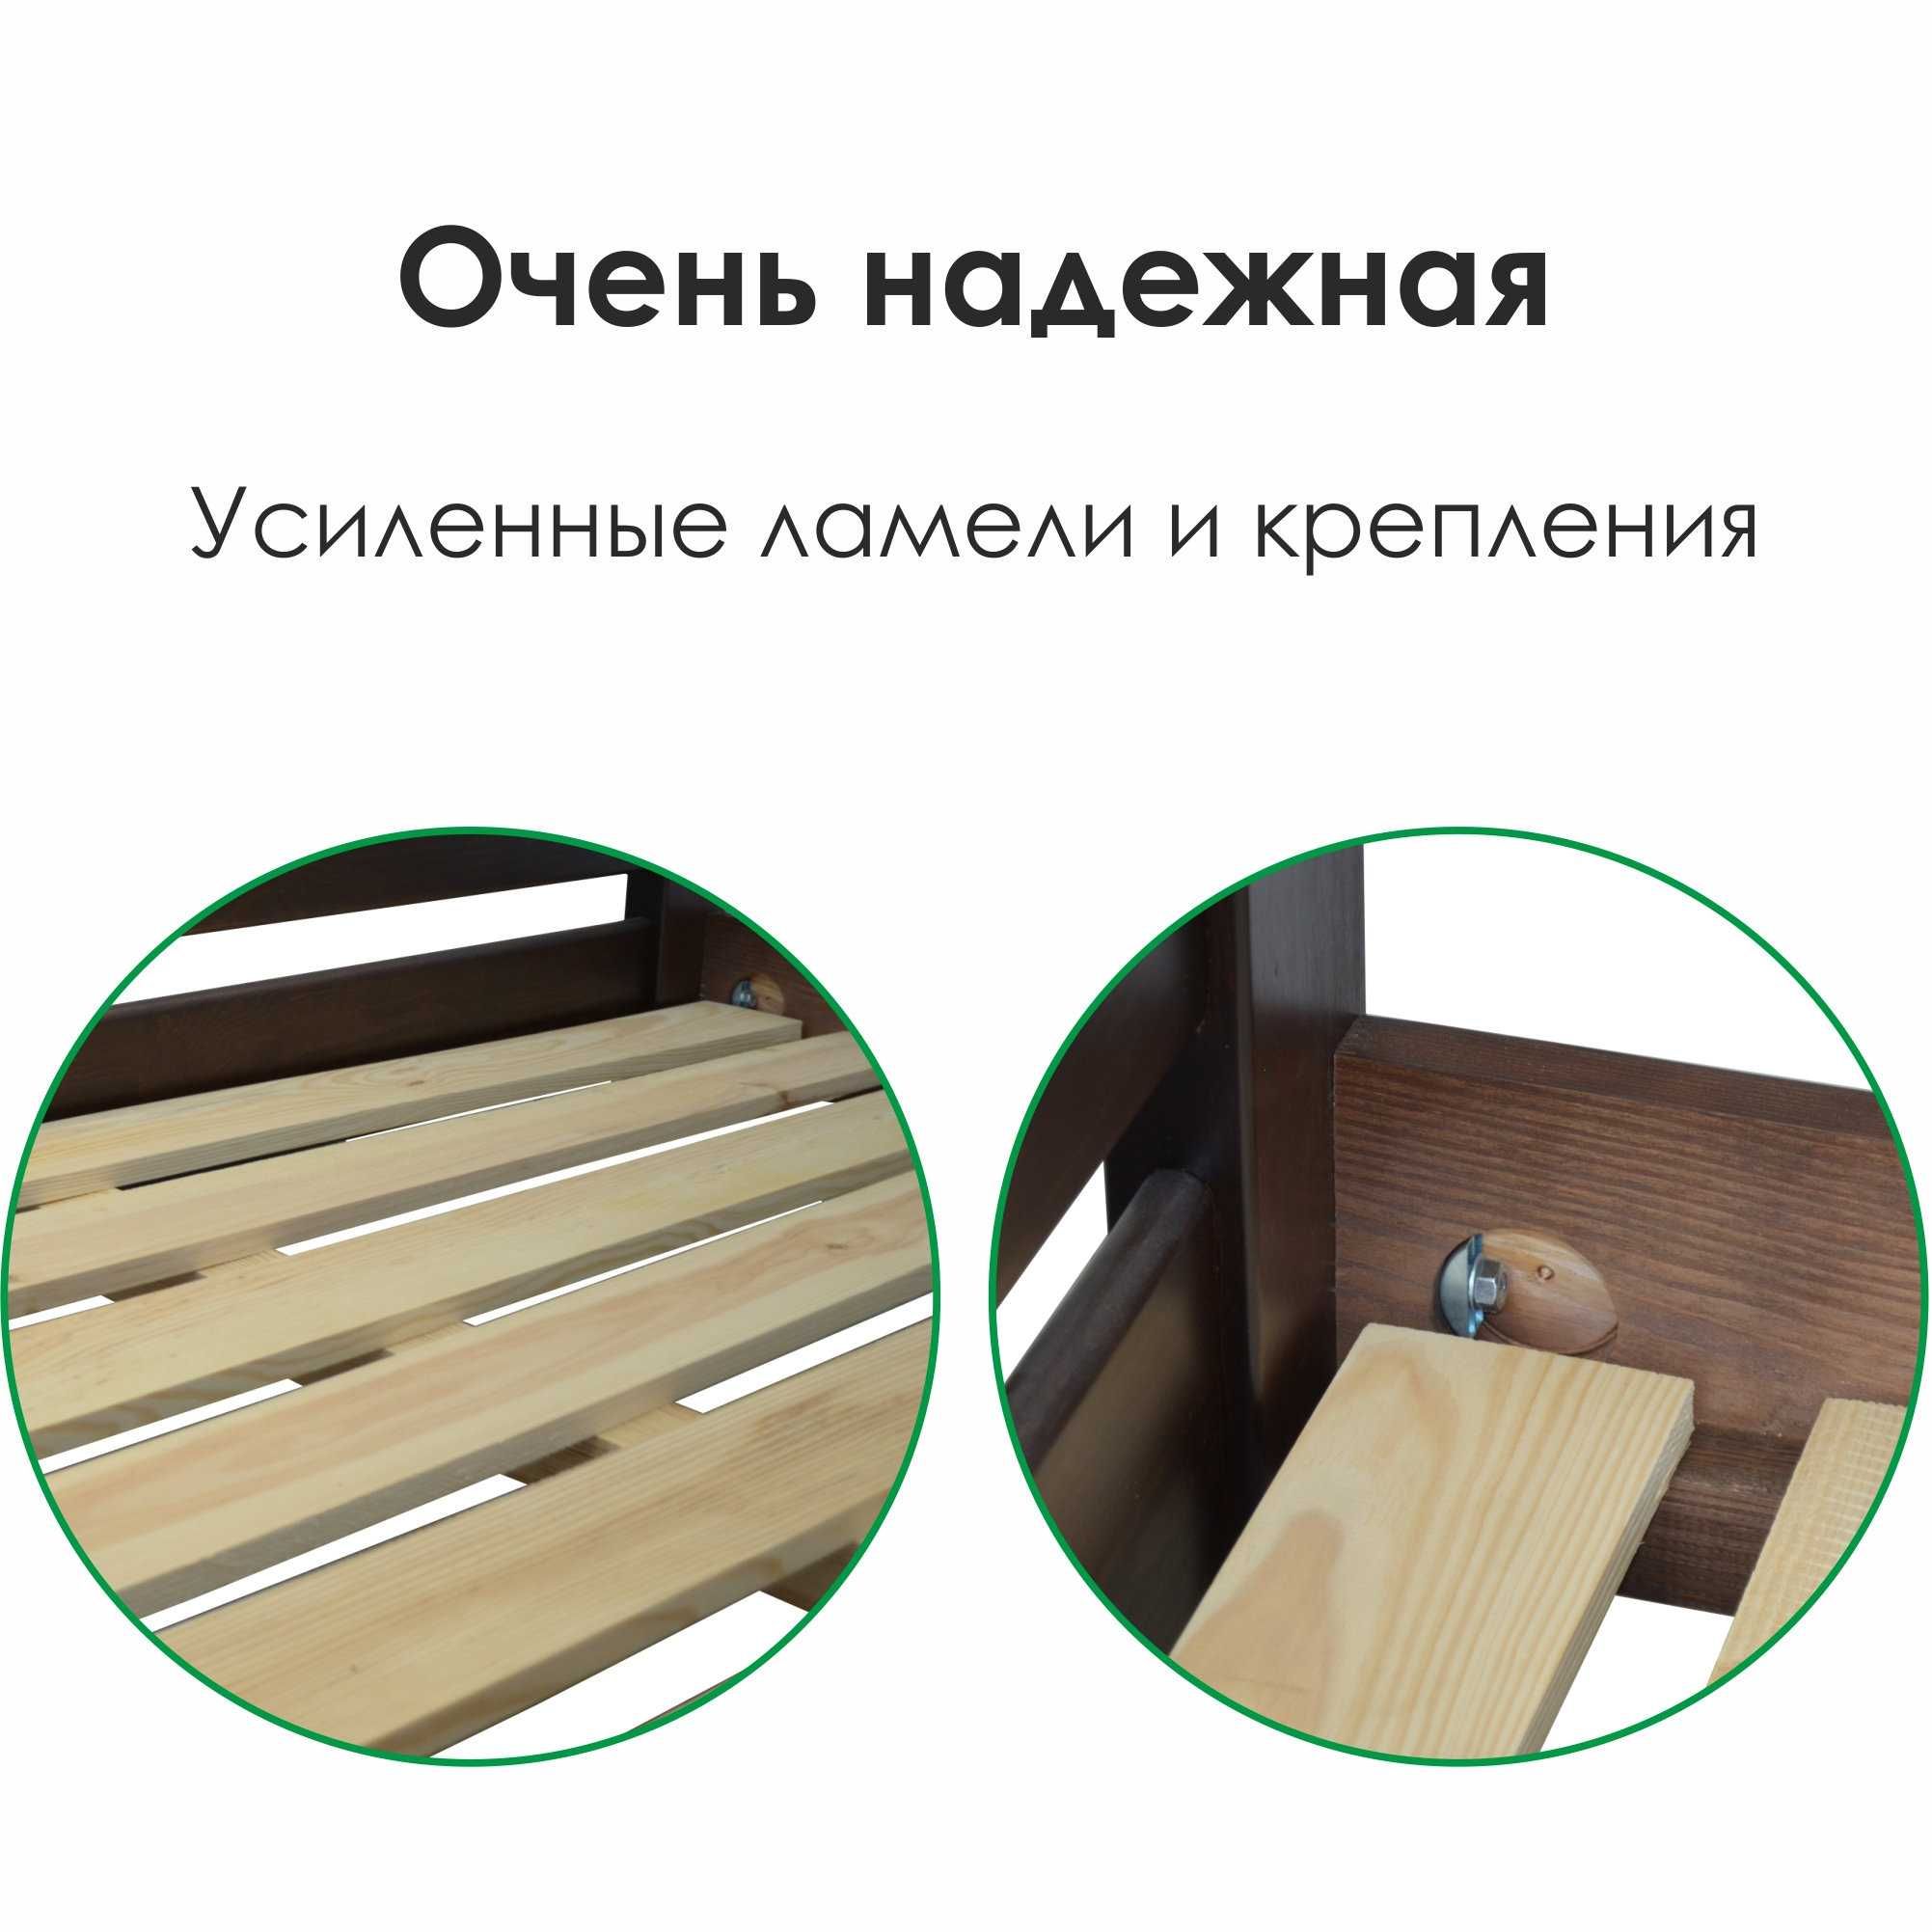 Продам новую деревянную двухъярусную кровать "Дуос"